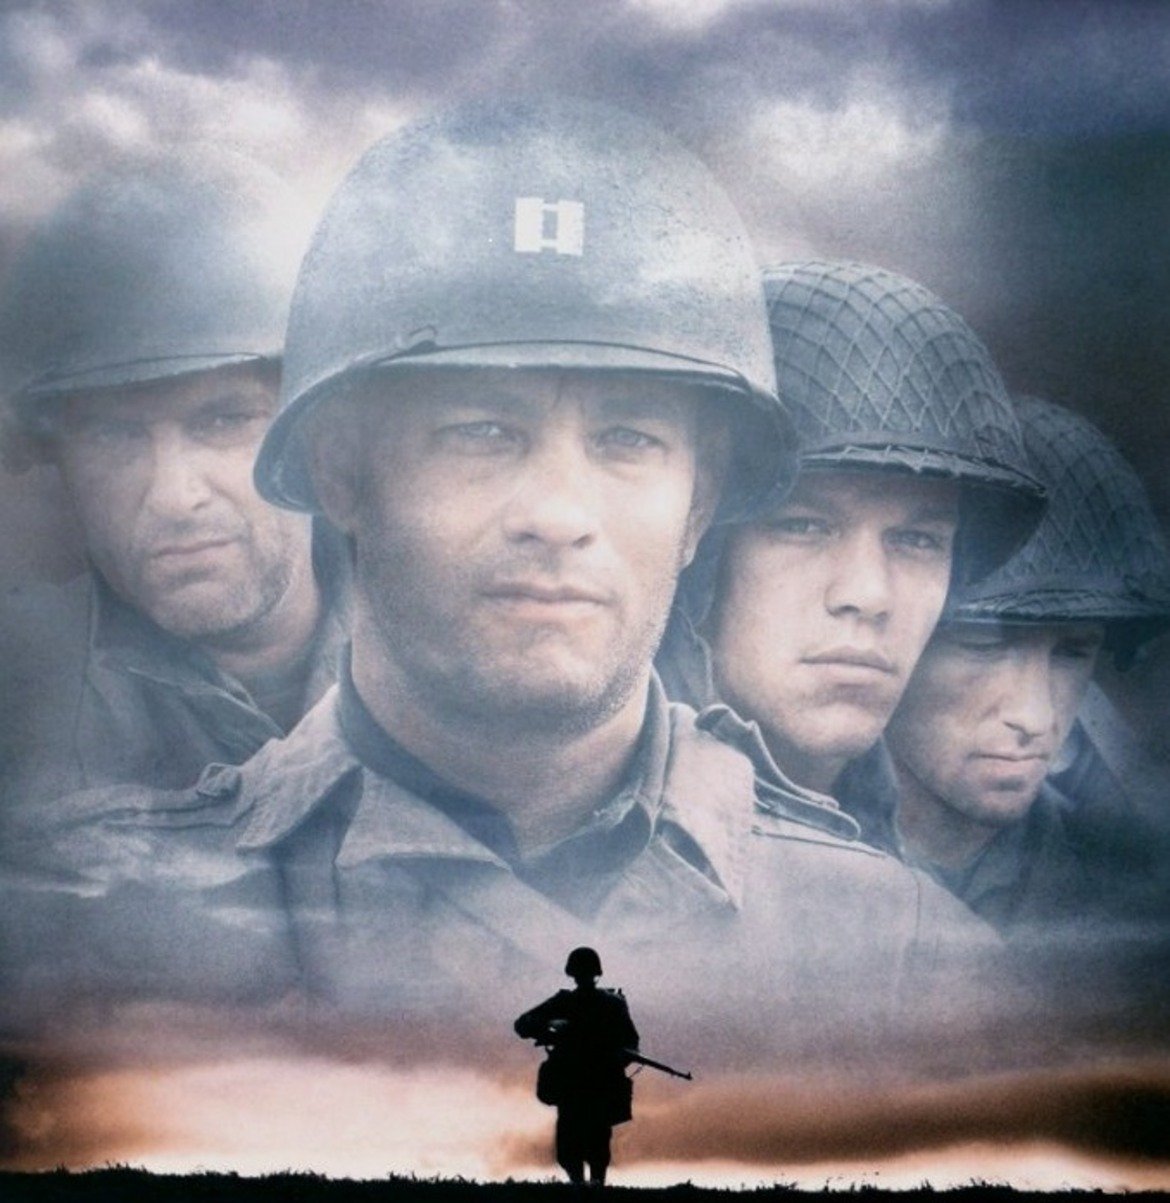  "Спасяването на редник Райън" 

Според доста киномани това е филмът на 1998-а година. Военната драма на Стивън Спилбърг проследява опитите на капитан Джон Милър, в ролята - Том Ханкс, да спаси редник Джейм Франсис Райън (Мат Деймън), чиито трима братя вече са загинали на фронта. От 11 номинации за "Оскар" филмът успява да спечели пет, включително и за режисура. Изплъзва му се златната статуетка за най-добър филм...